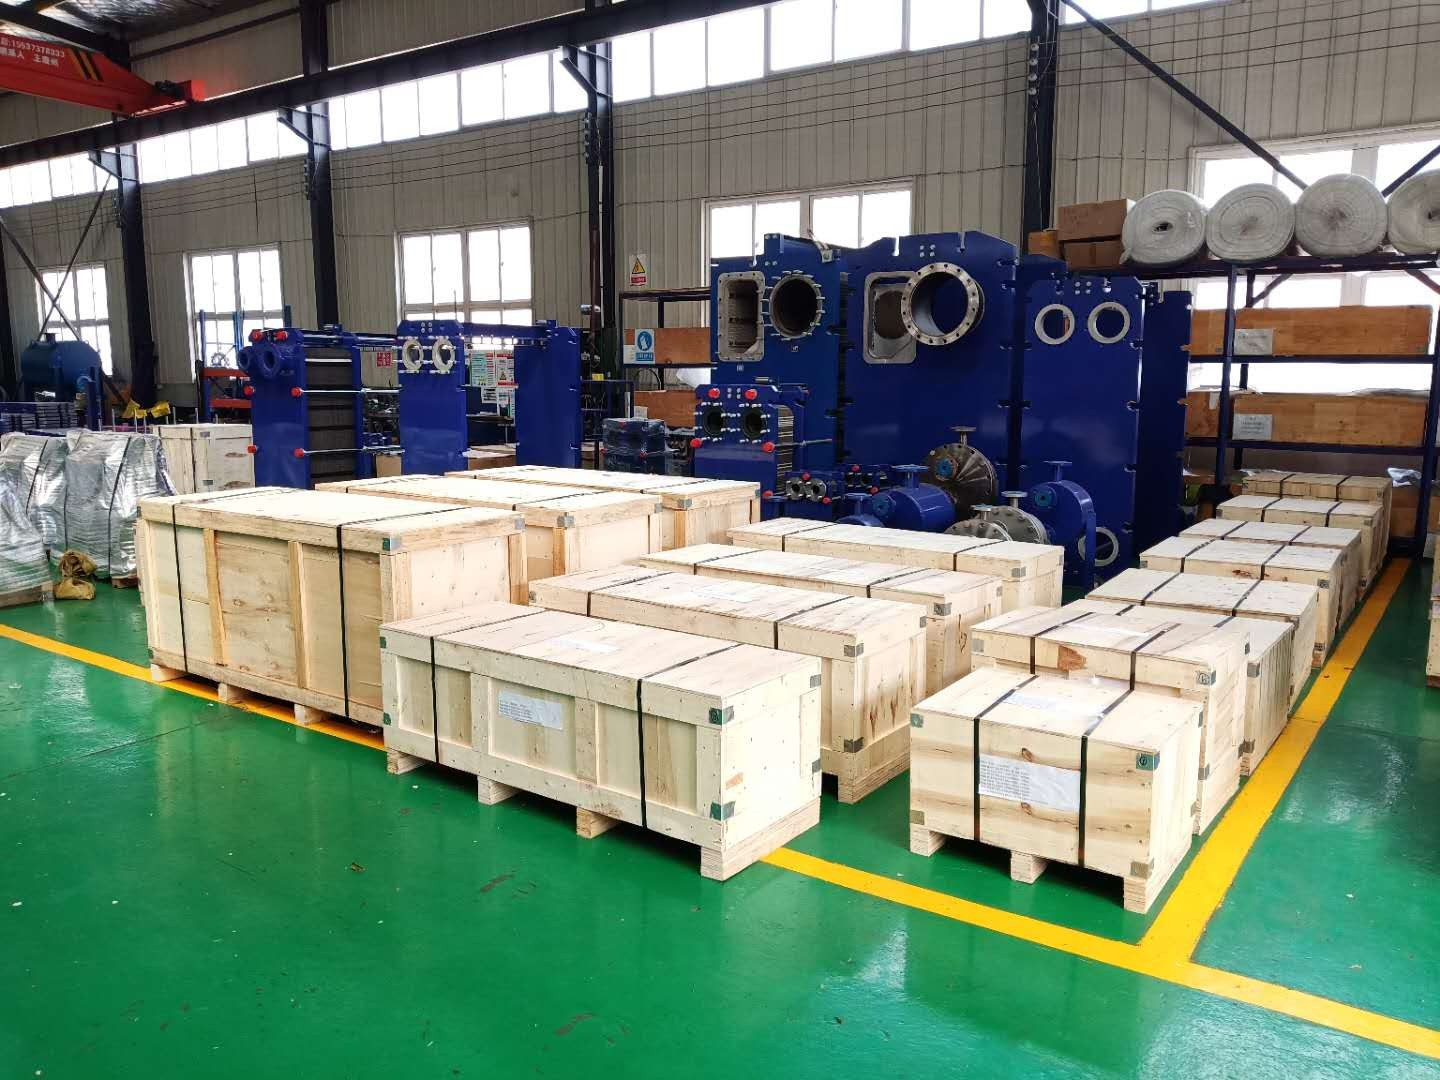 Plate heat exchanger factory: Qingdao Ruipute's advantages-optimization design